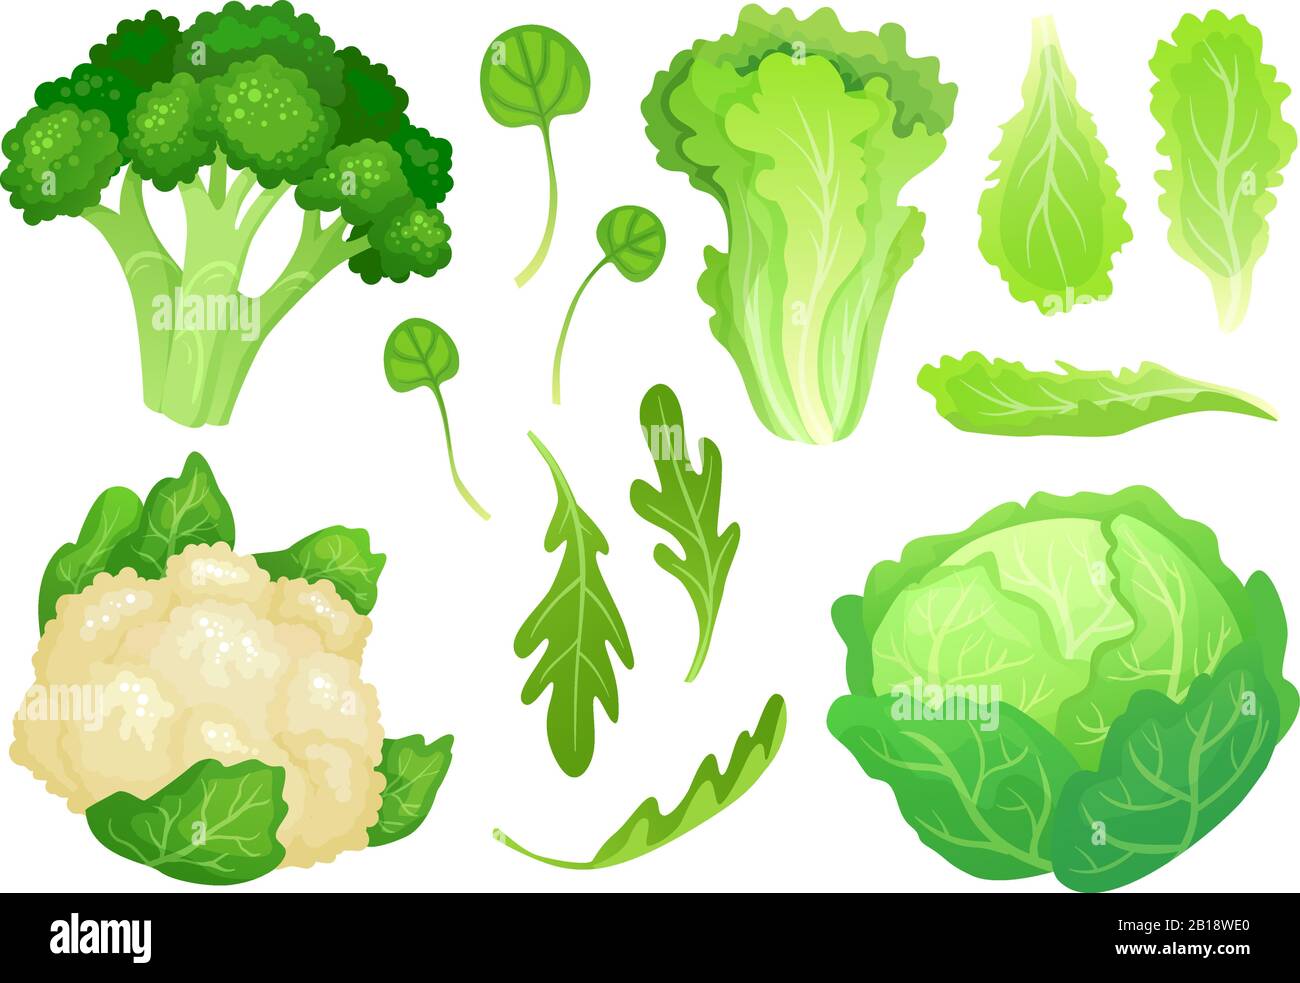 Cartoni animati. Foglie di lattuga fresca, insalata di dieta vegetariana e sano verde cavolo giardino. Illustrazione del vettore della testa del cavolfiore Illustrazione Vettoriale